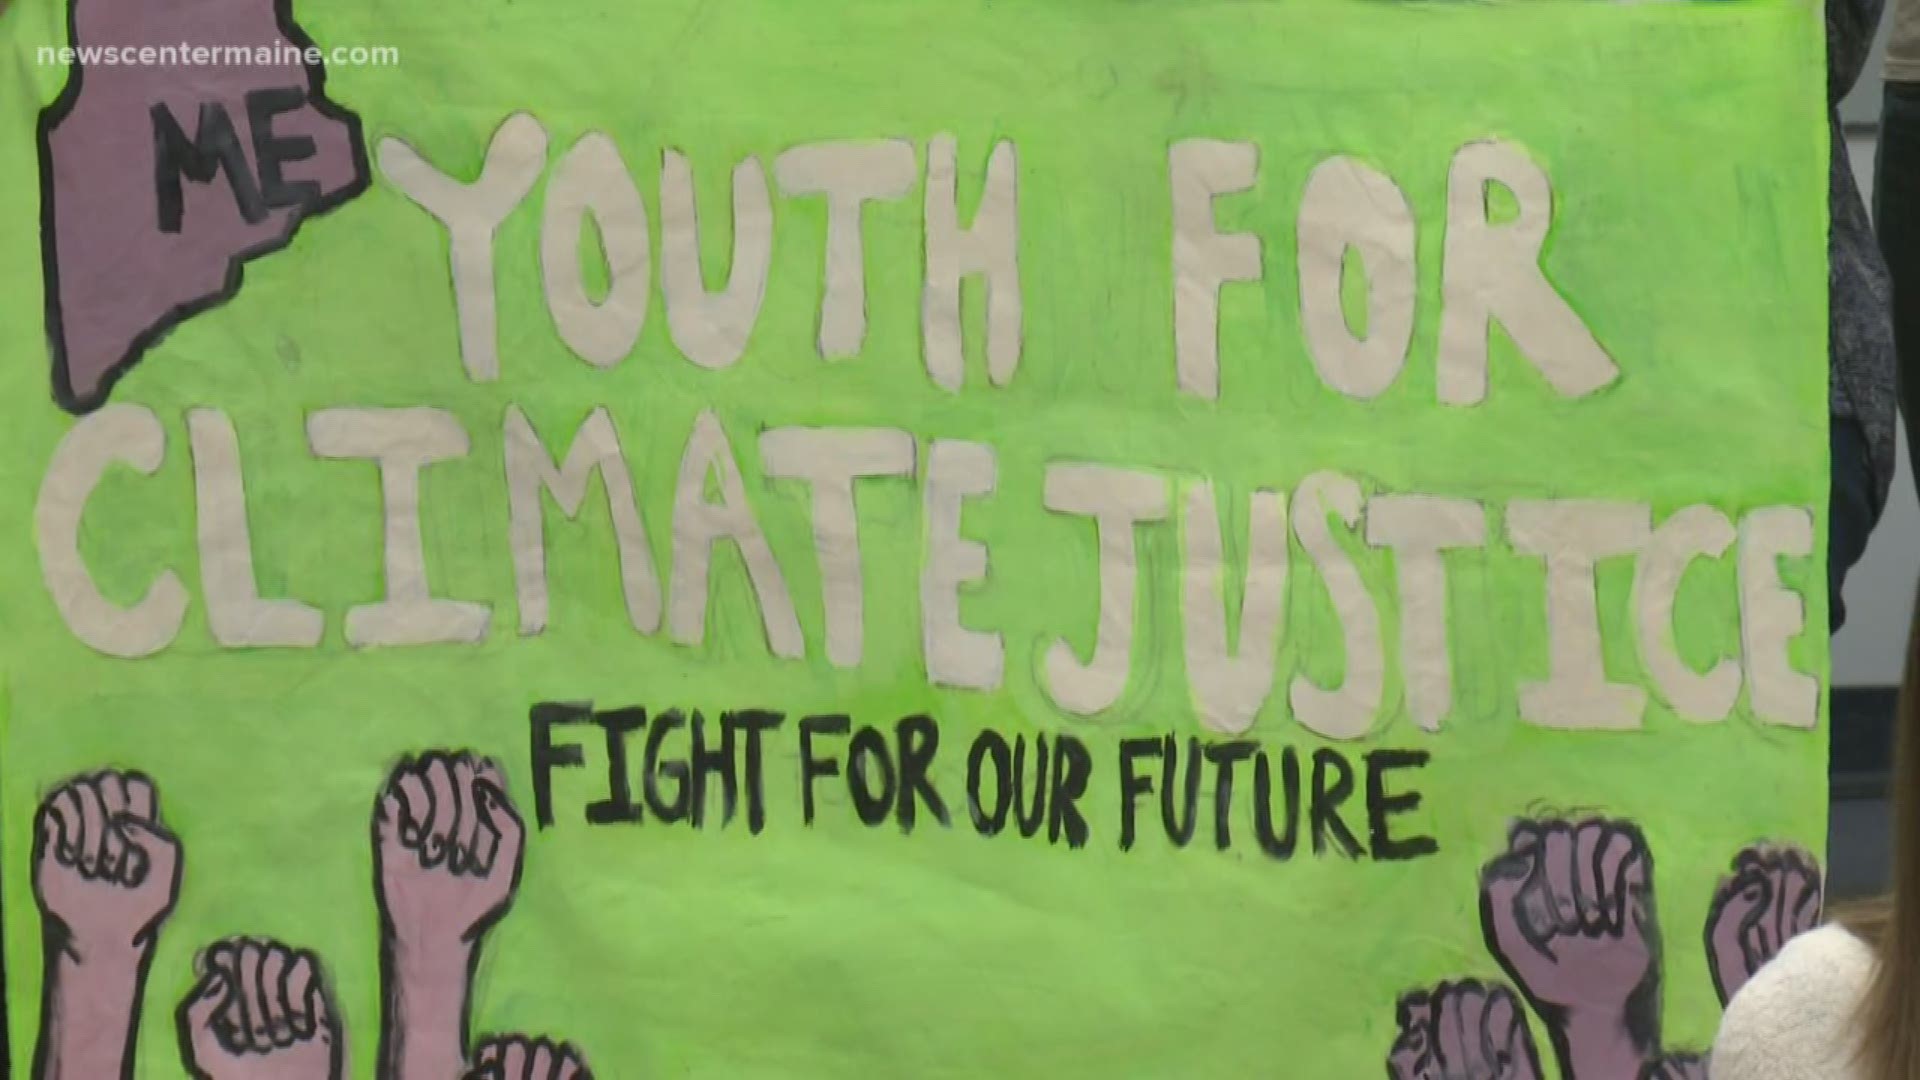 Young climate activists criticize Maine climate plans